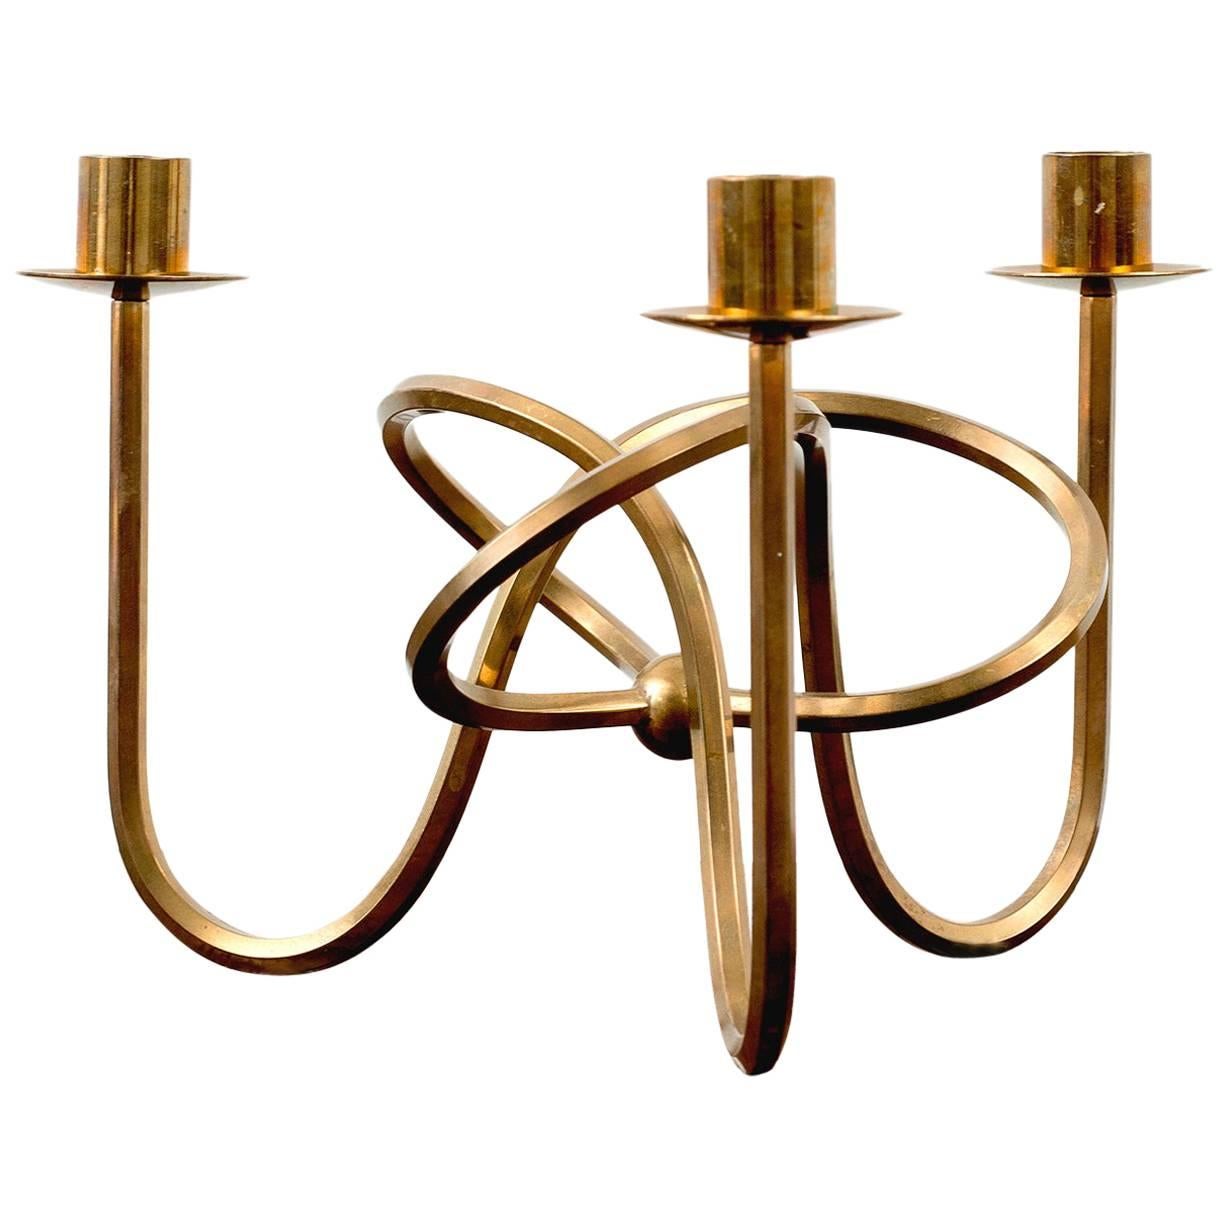 Josef Frank "Friendship Knot" Candelabra in Brass for Svenskt Tenn, 1950s